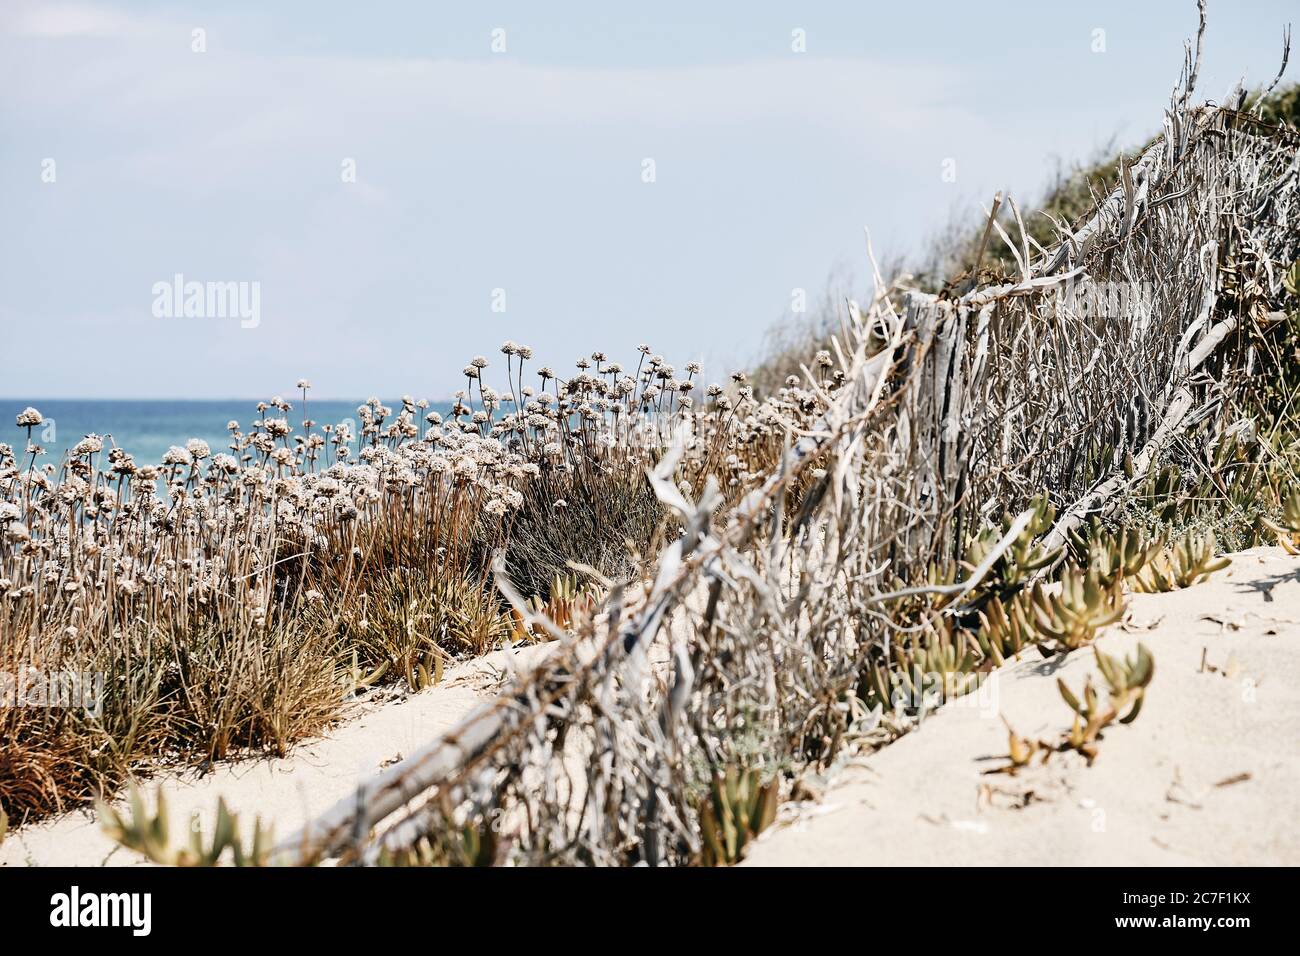 Schöne Aufnahme von trockenen Pflanzen auf einer sandigen Oberfläche mit Das Meer und ein blauer Himmel im Hintergrund Stockfoto